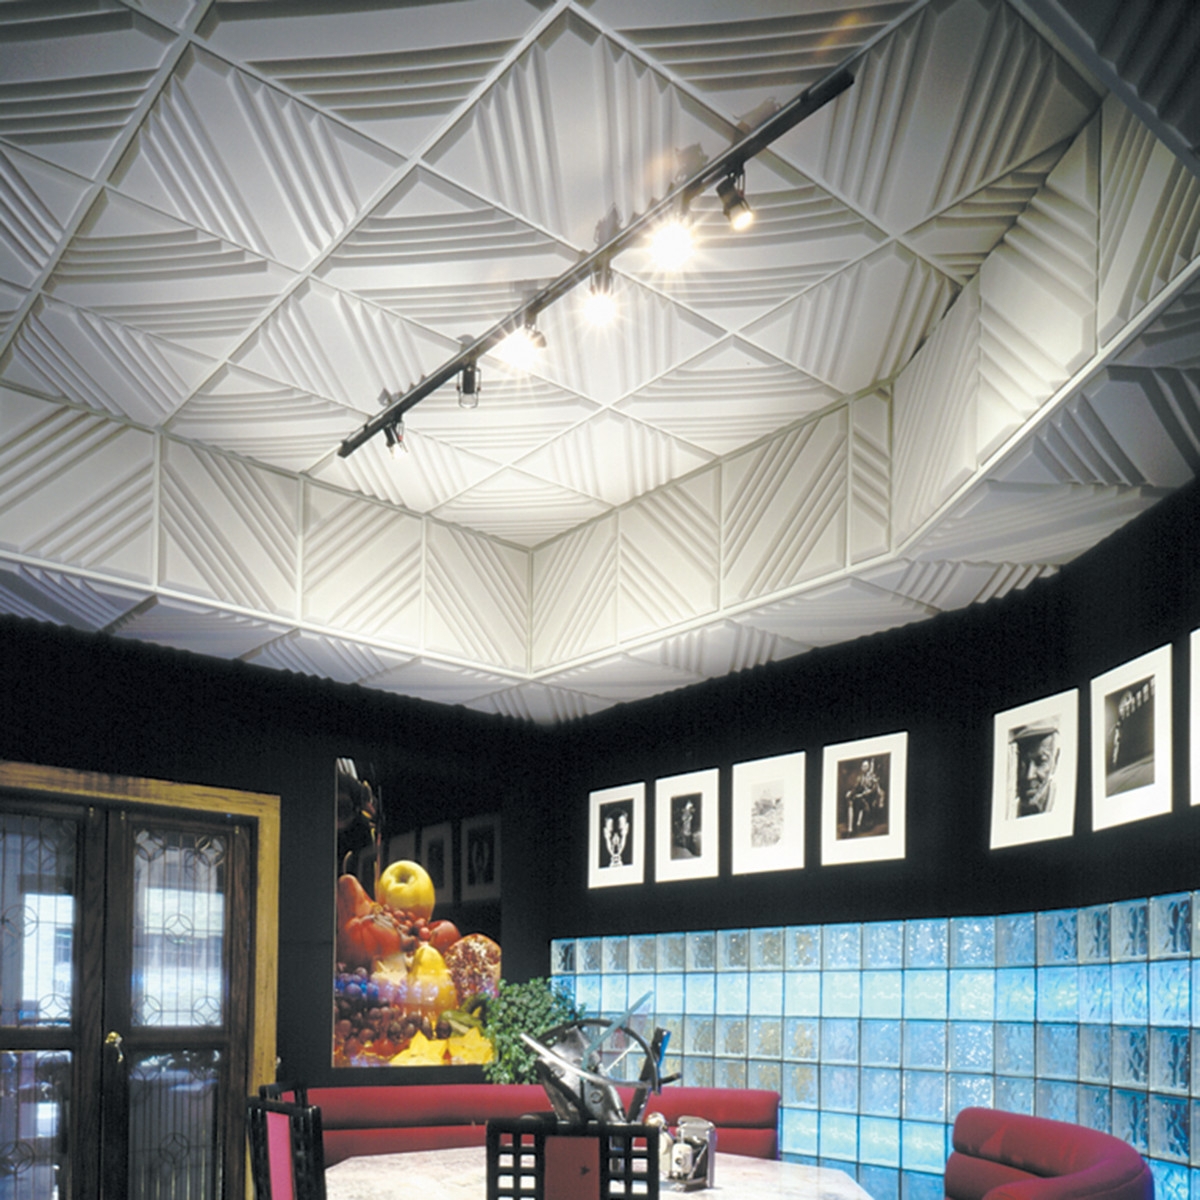 Ceiling Tiles Acoustic Pads Ceiling Tiles Acoustic Pads ceiling tiles acoustic pads ceiling tiles 1200 X 1200